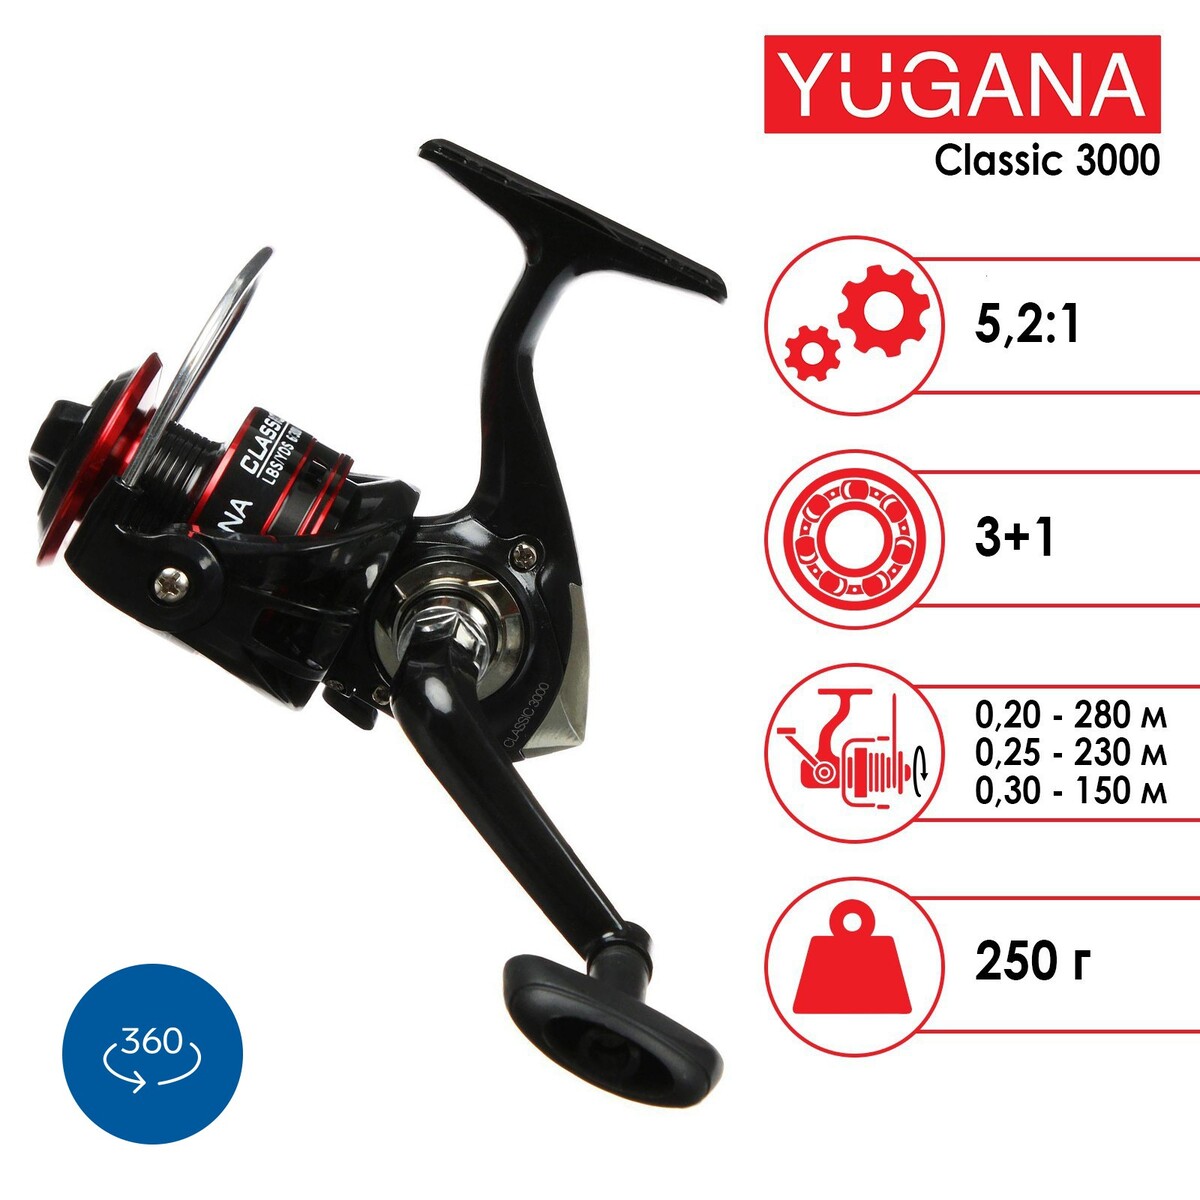  yugana classic 3000, 3 + 1 